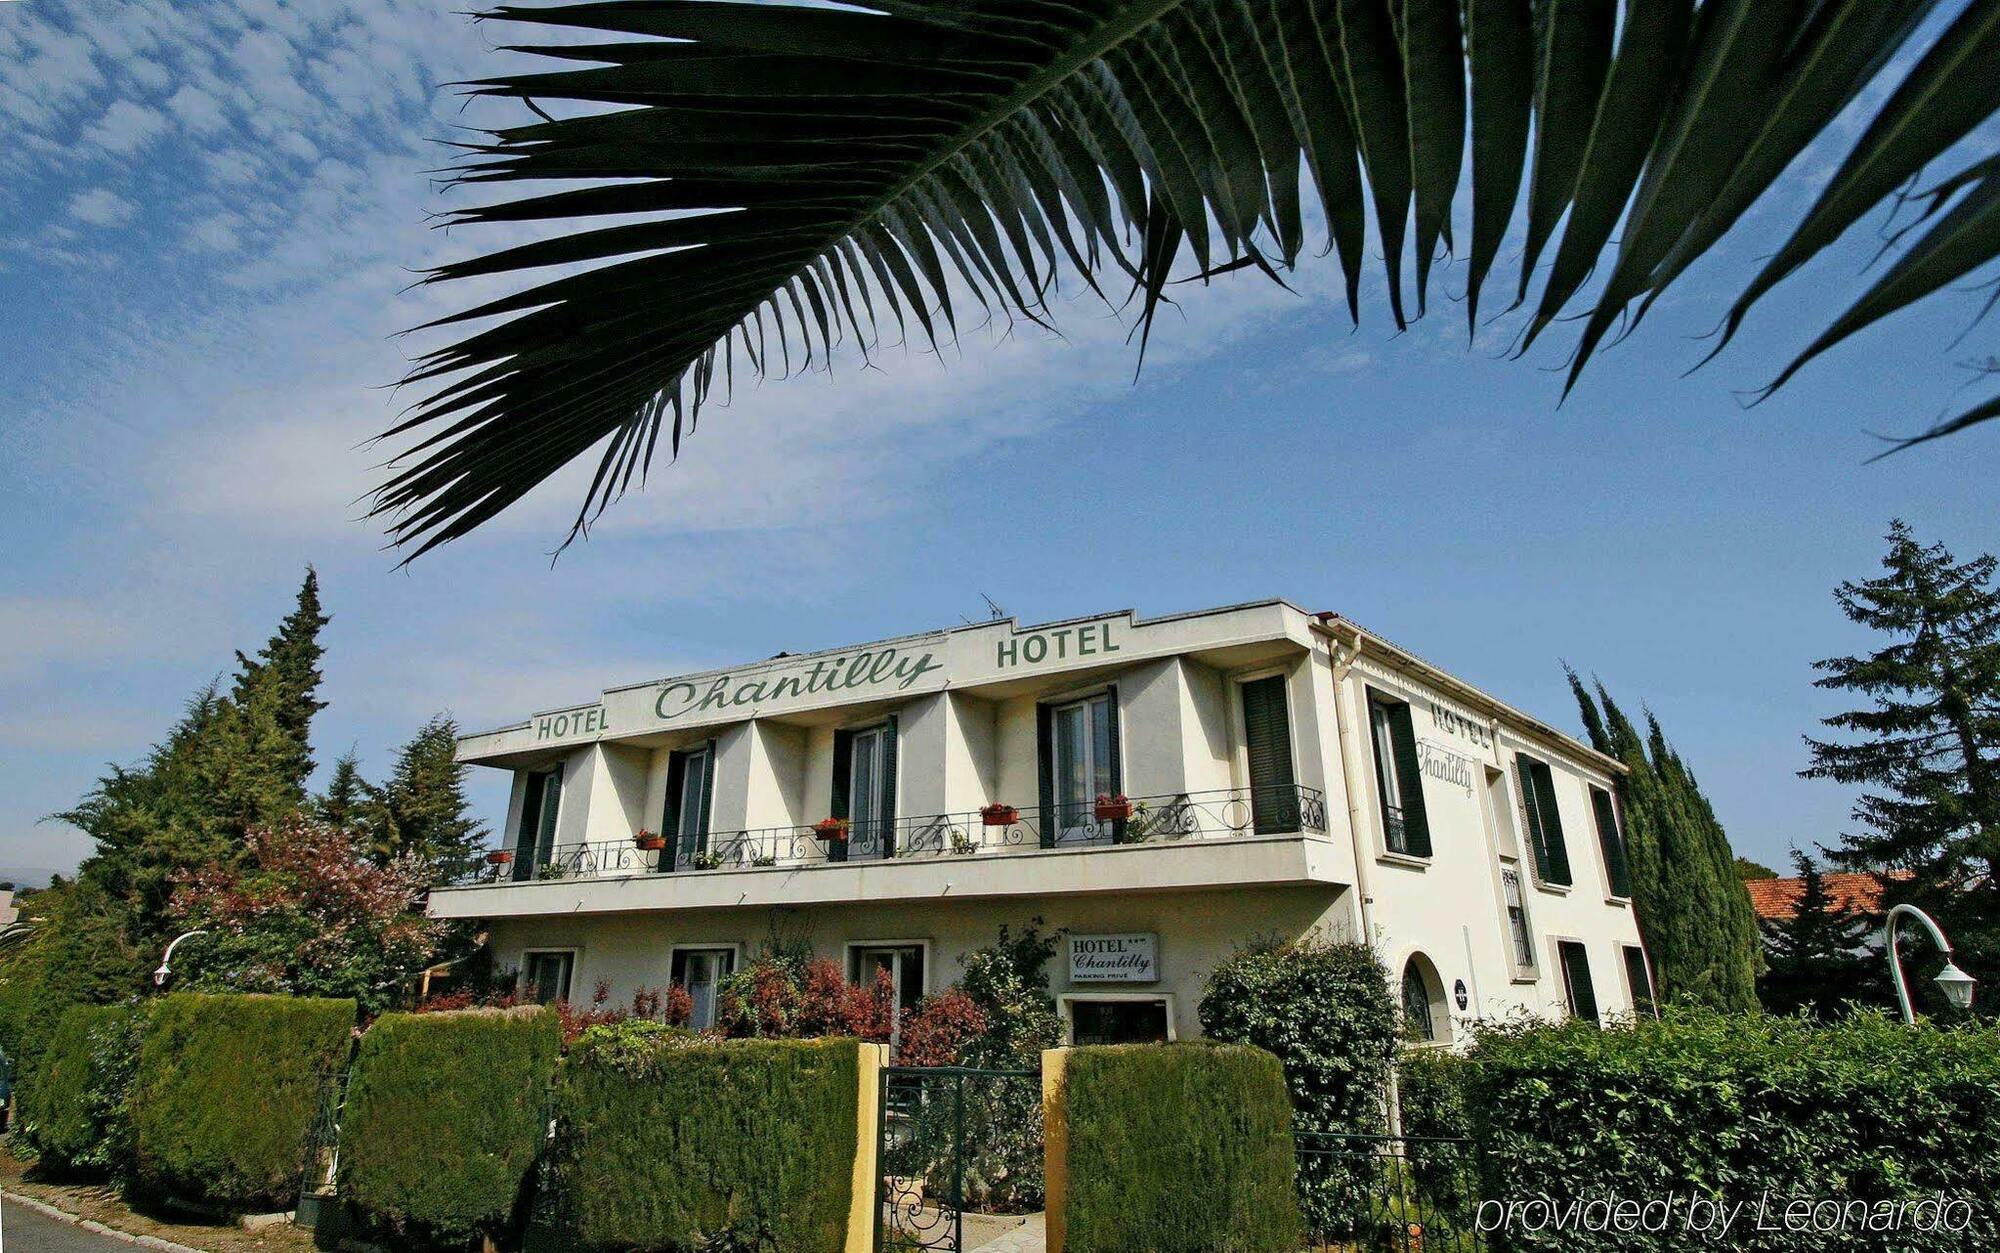 Hôtel Bleu Riviera Cagnes-sur-Mer Exterior foto